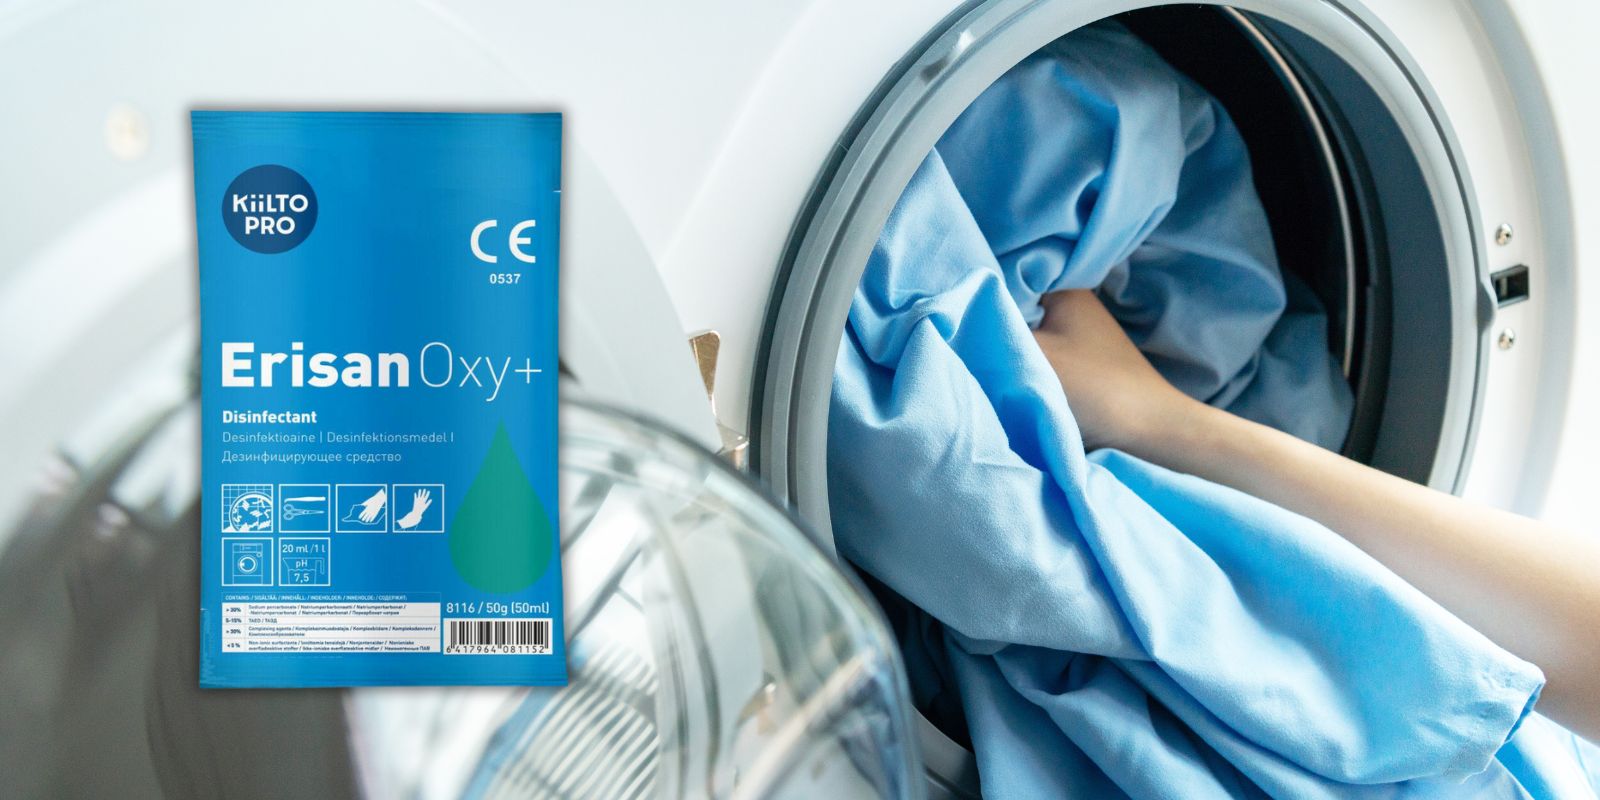 Erisan Oxy+ kan brukes til vask av klinikktøy.jpg